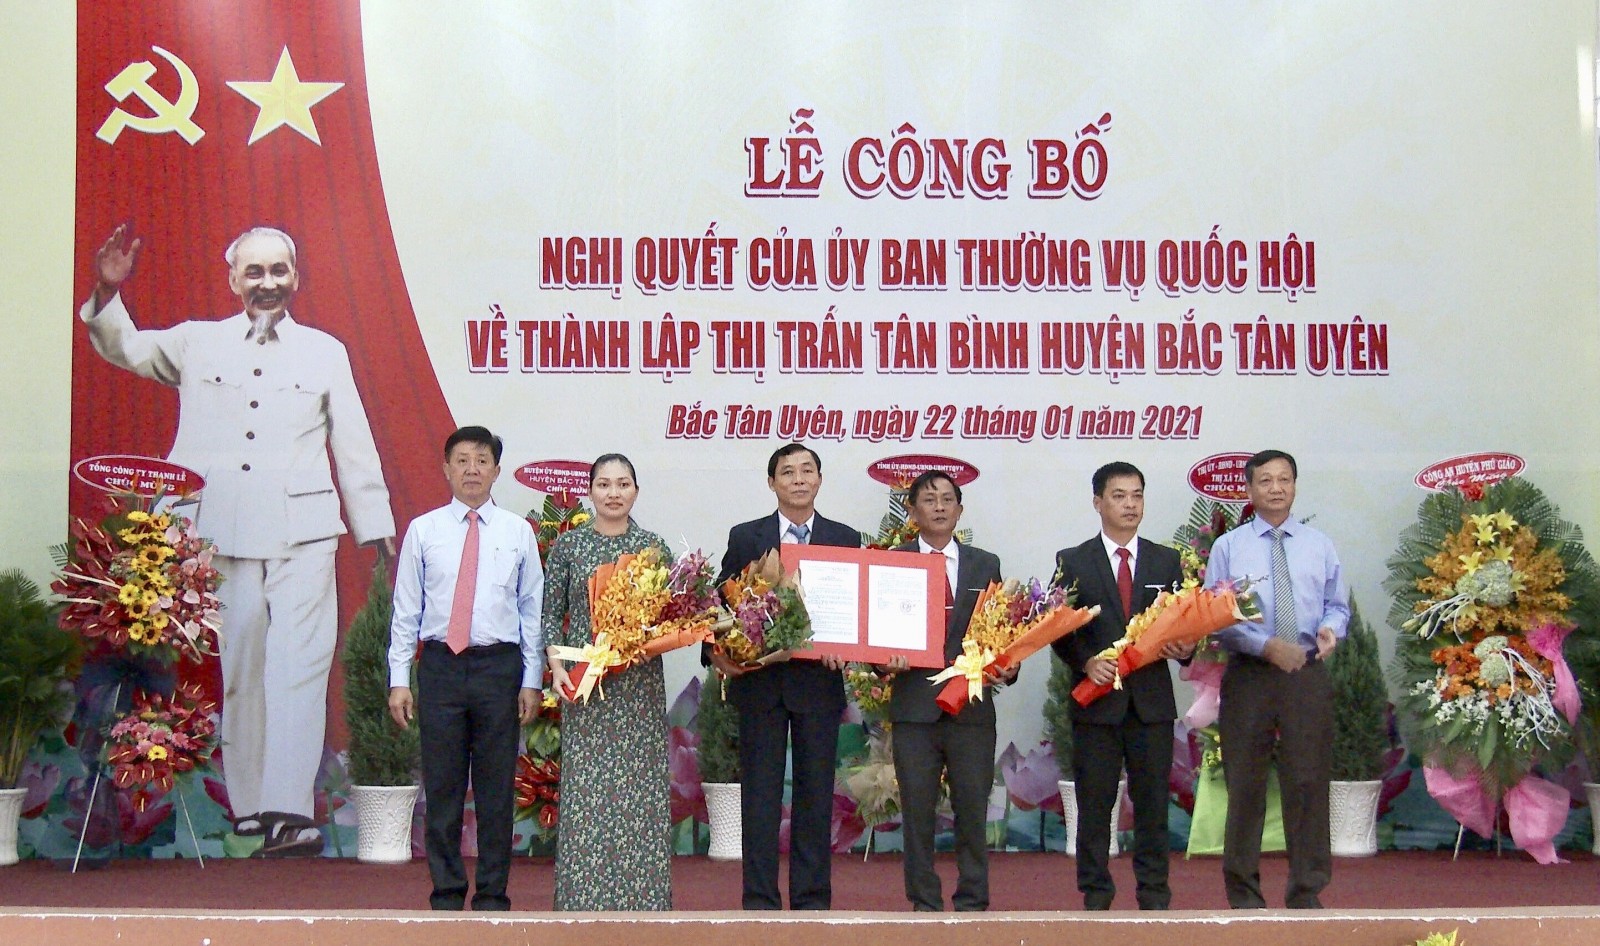 Ông Võ Văn Bá và ông Nguyễn Thanh Trúc trao nghị quyết cho lãnh đạo thị trấn Tân Bình